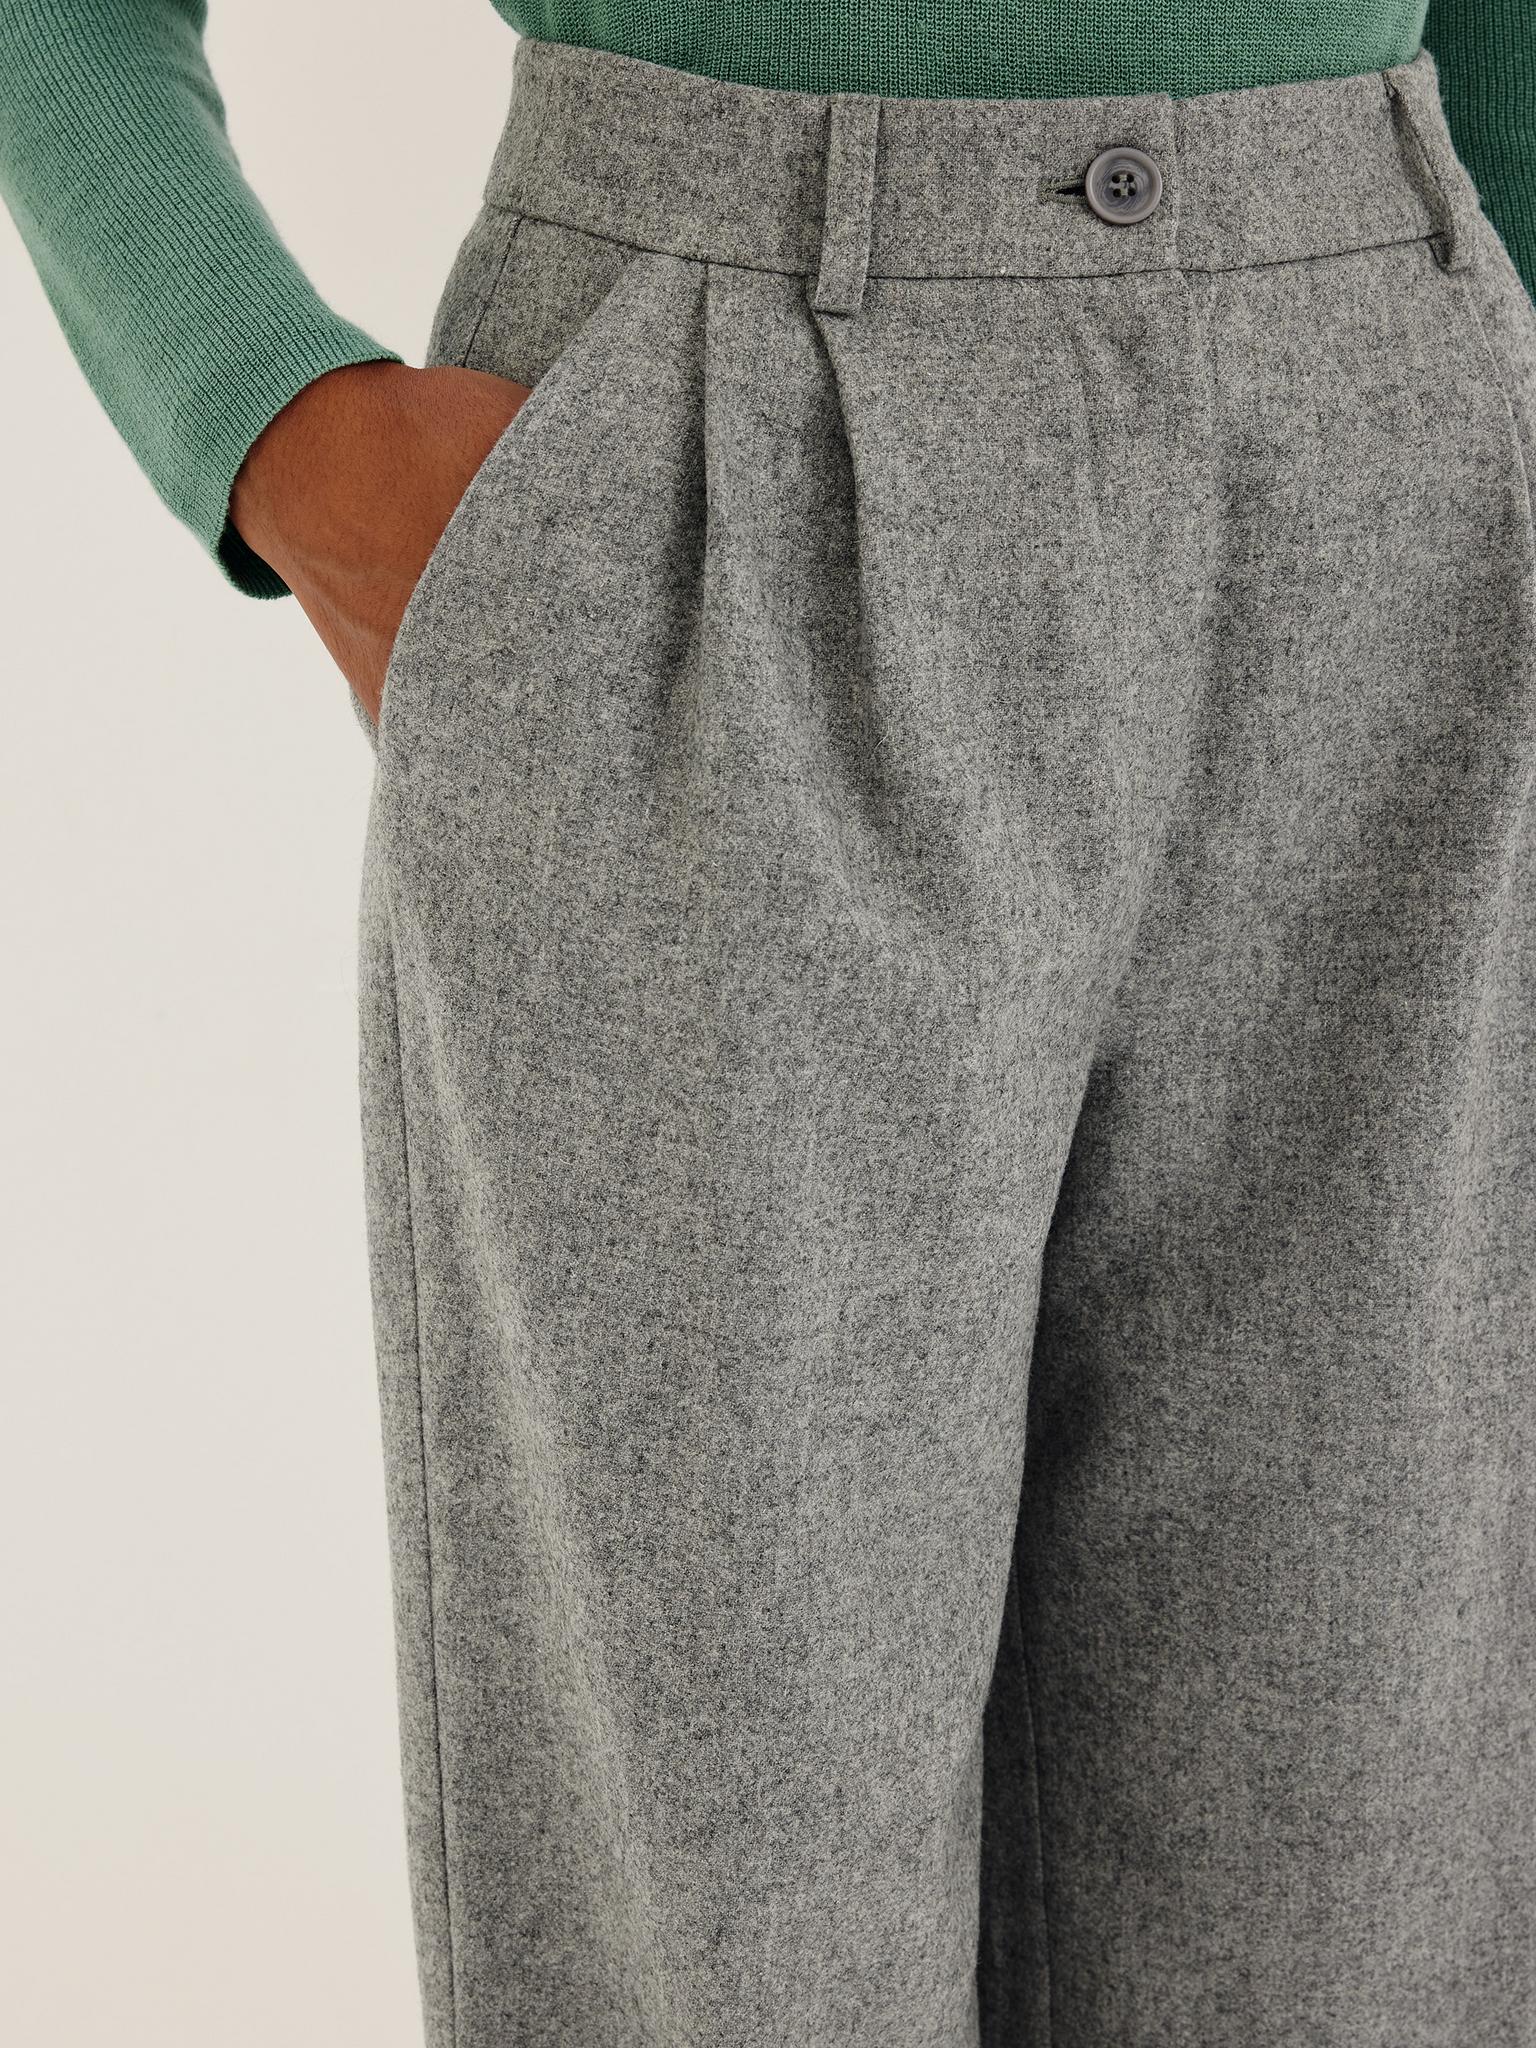 ОДЕЖДА \u003e Серые брюки с добавлением шерсти купить в интернет-магазине